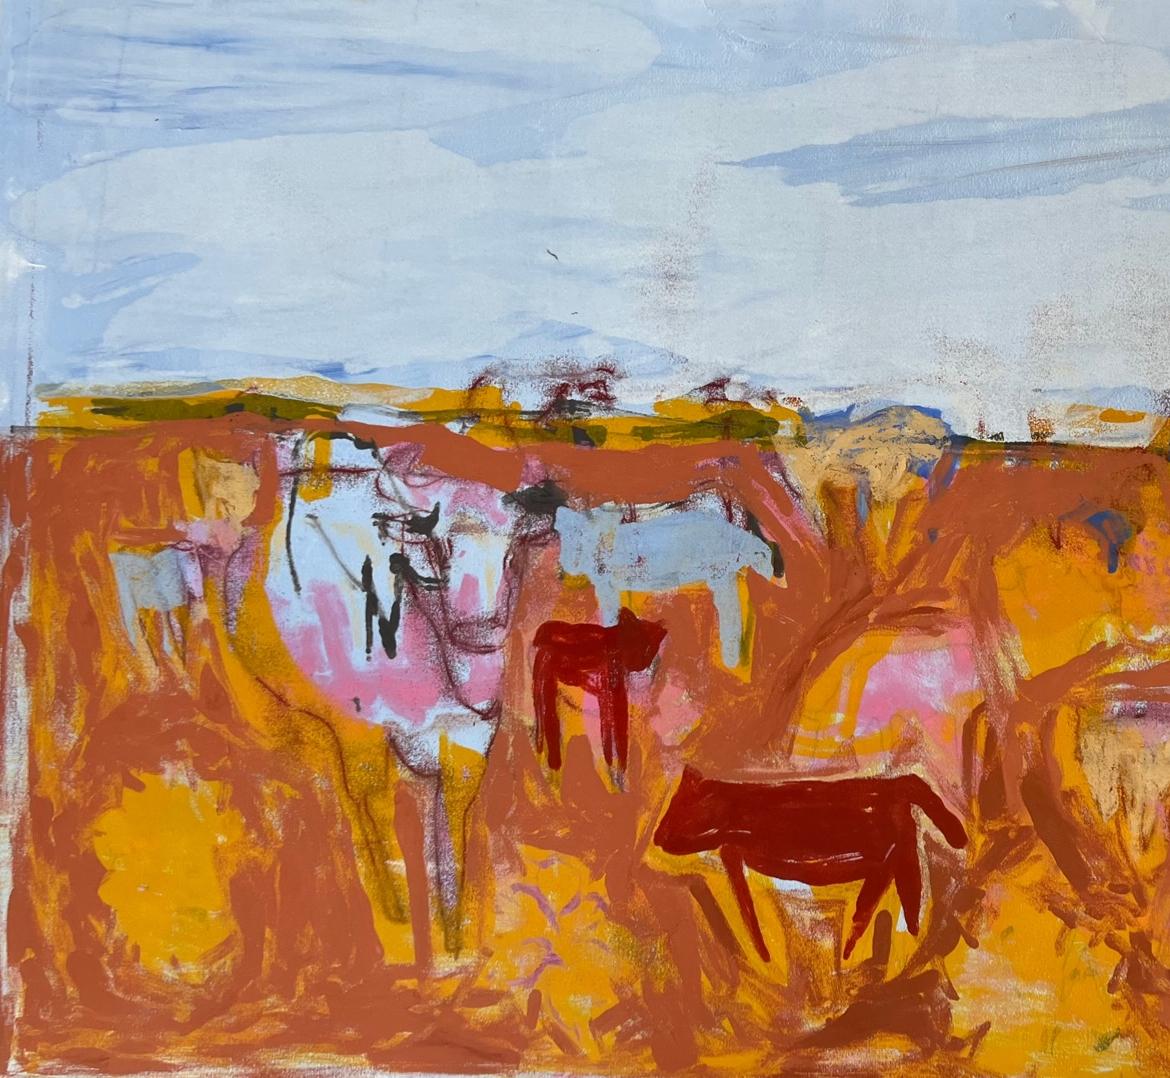 COWS Monotypie 31 x 44, COWS  Abstrakte figurative Kunst   Gerahmt 37 x 50  Vieh (Abstrakter Expressionismus), Mixed Media Art, von Charlotte Seifert